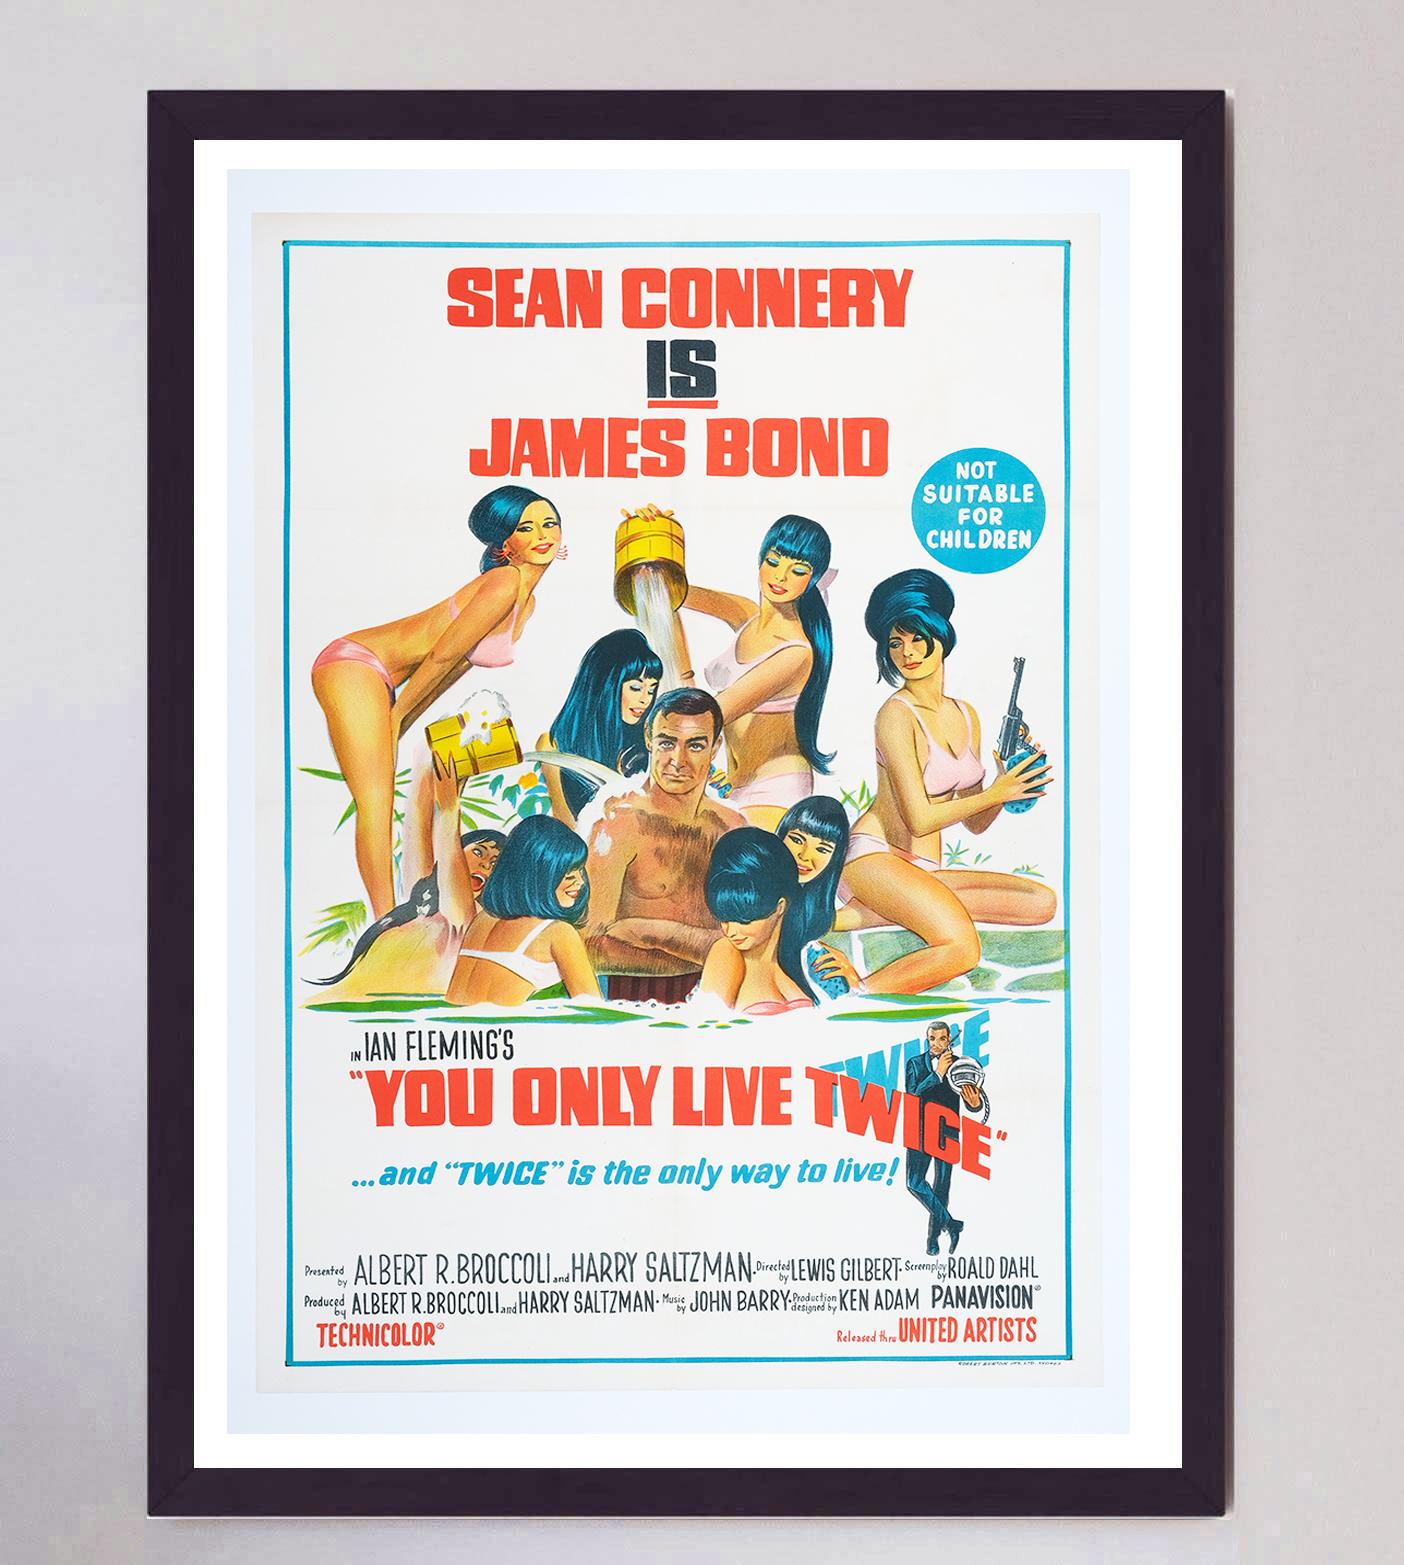 Der 1967 erschienene Film You Only Live Twice ist der fünfte Auftritt von Sean Connery als James Bond. Er ist einer der wichtigsten Bond-Filme überhaupt, in dem Blofeld zum ersten Mal auftritt, und wurde von Roald Dahl für die Leinwand geschrieben